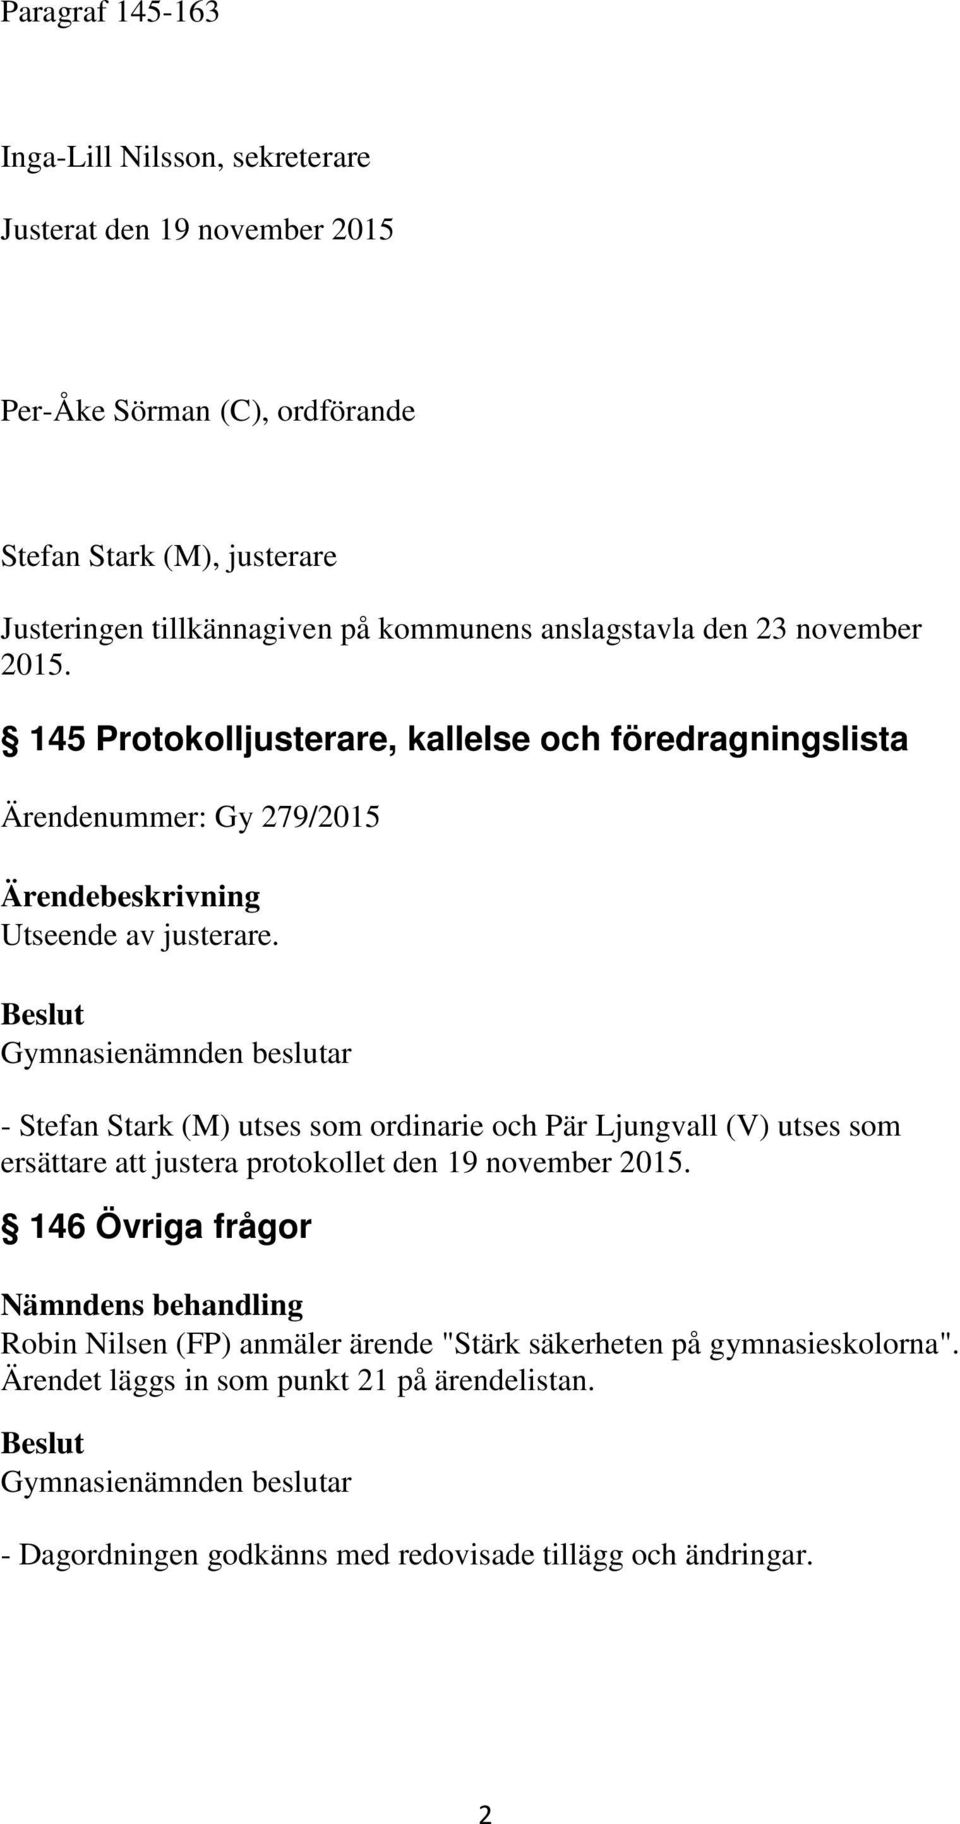 Gymnasienämnden beslutar - Stefan Stark (M) utses som ordinarie och Pär Ljungvall (V) utses som ersättare att justera protokollet den 19 november 2015.